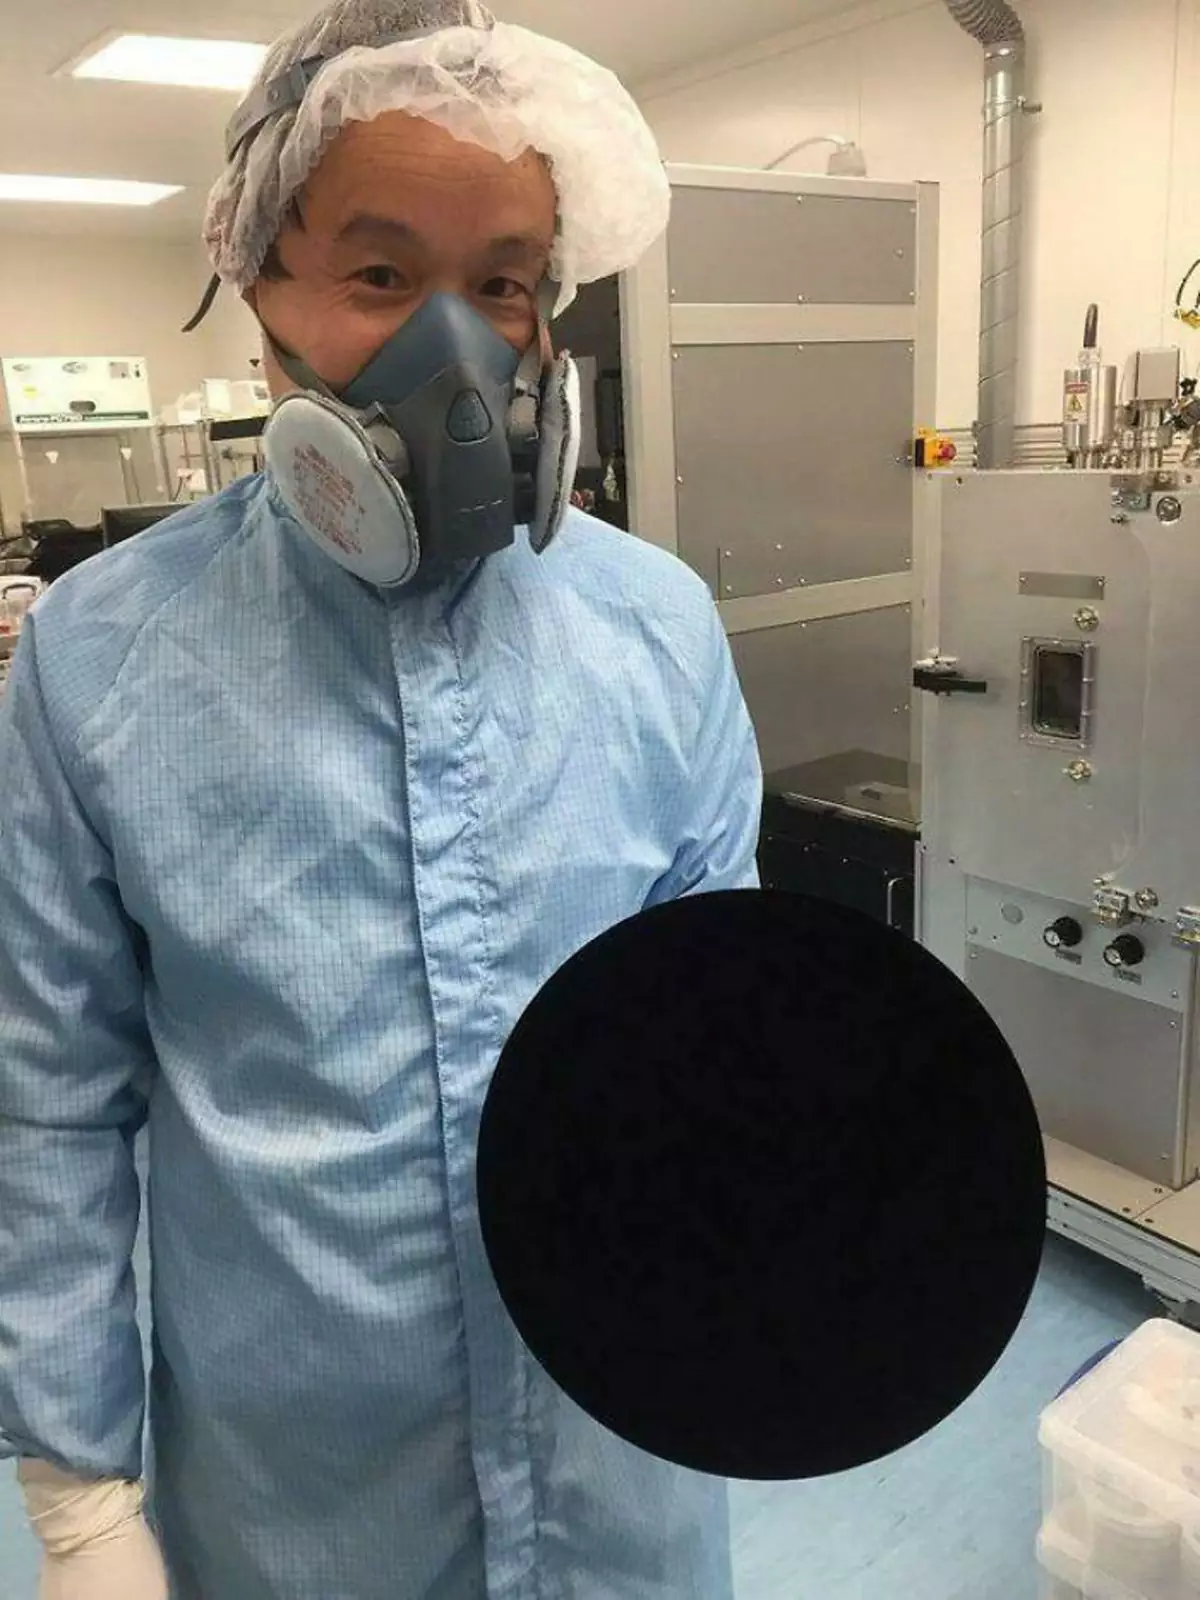 Ученый держит баскетбольный мяч, покрытый Vantablack — самым черным веществом в мире.